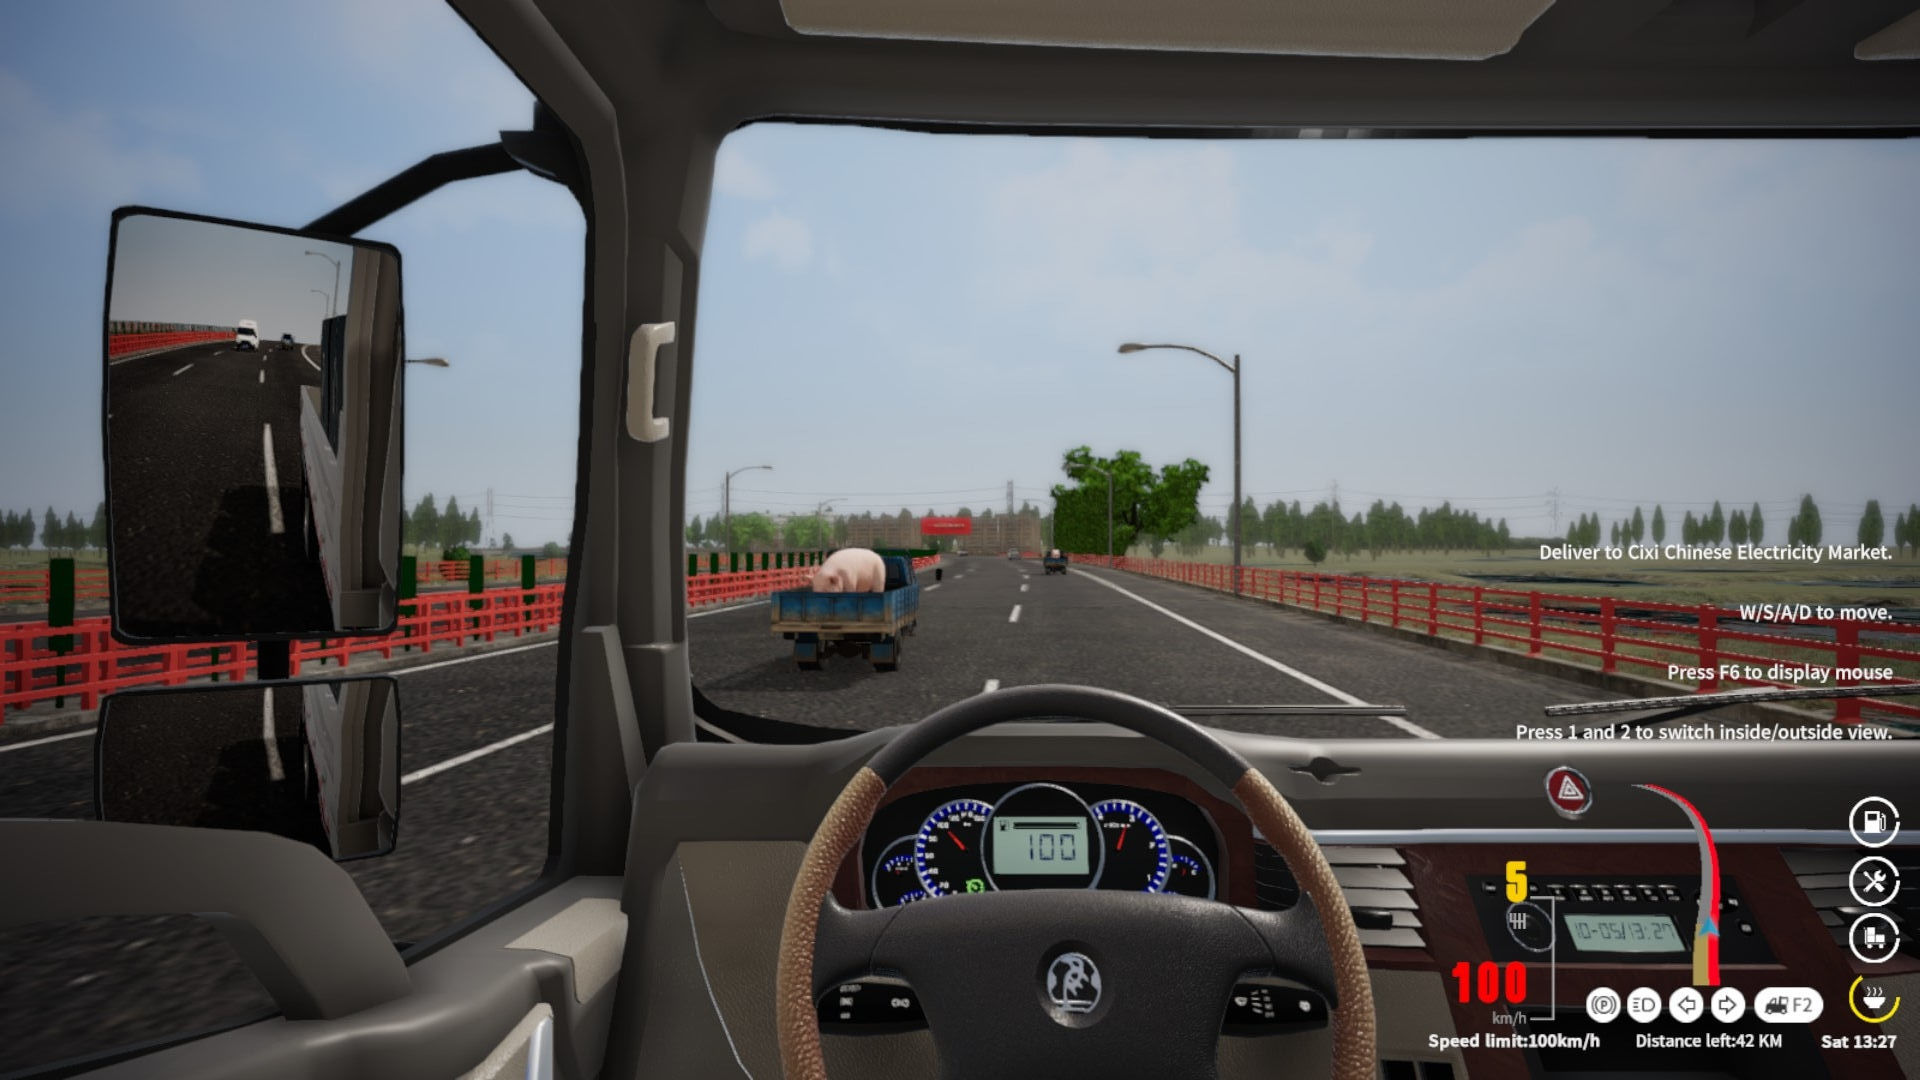 美洲卡车模拟游戏安卓版 v1.0